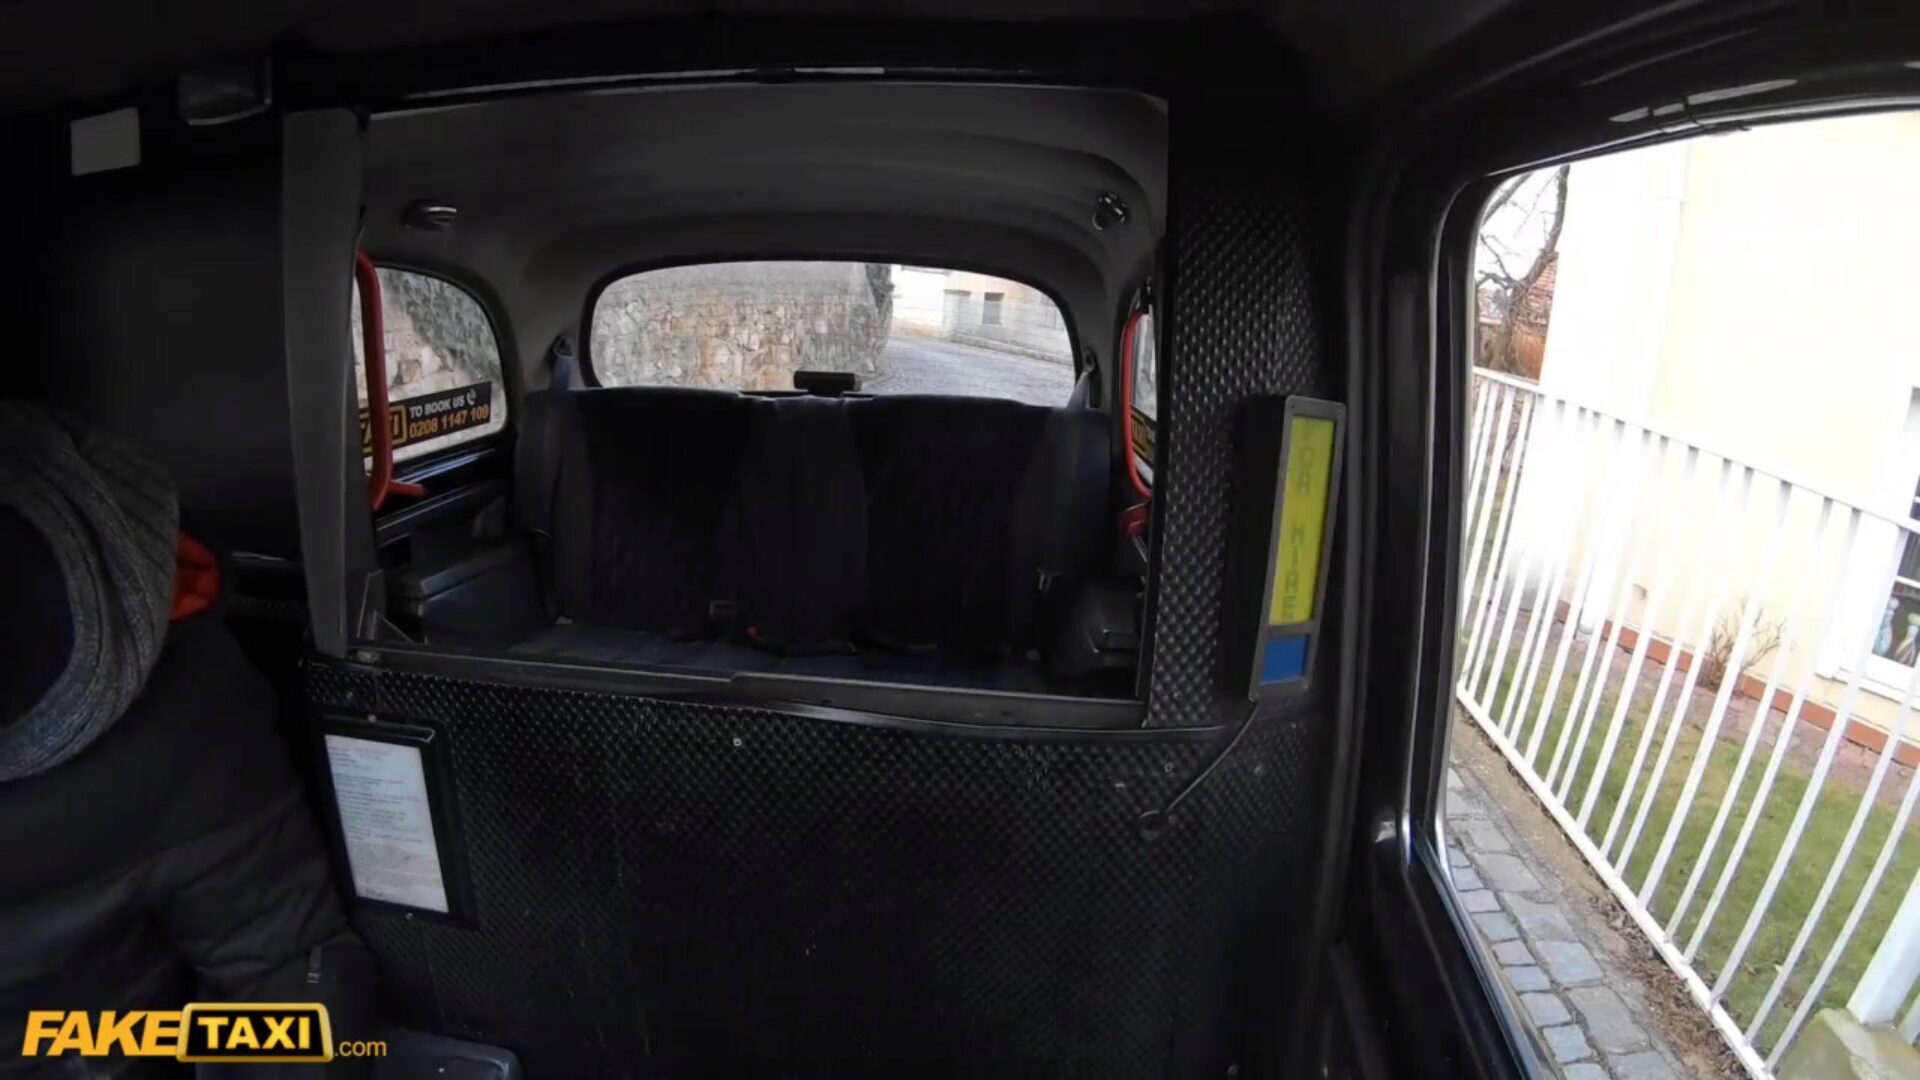 ψεύτικο ταξί ασιατικό μέλι παραλαμβάνει κάλτσες σχισμένο και μουνί γεμιστό από ιταλική cabbie